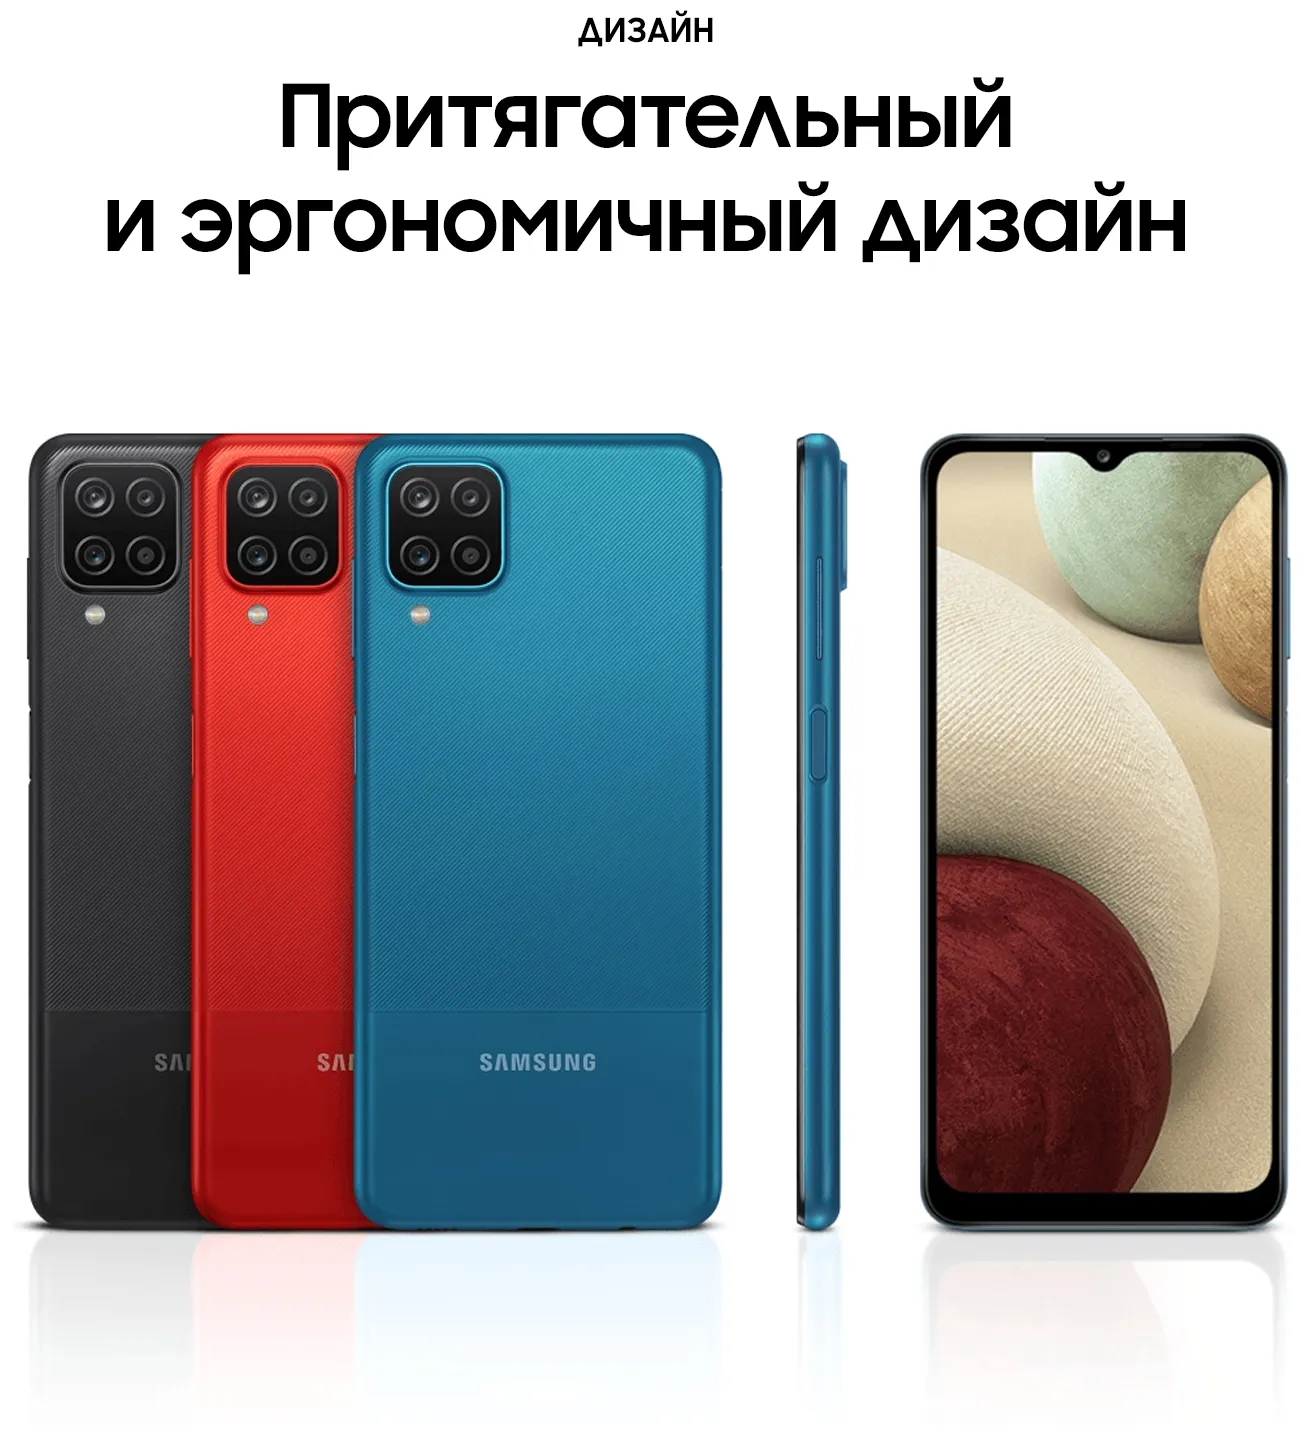 Samsung Galaxy A12 (SM-A127) 4/64 GB, qora#18